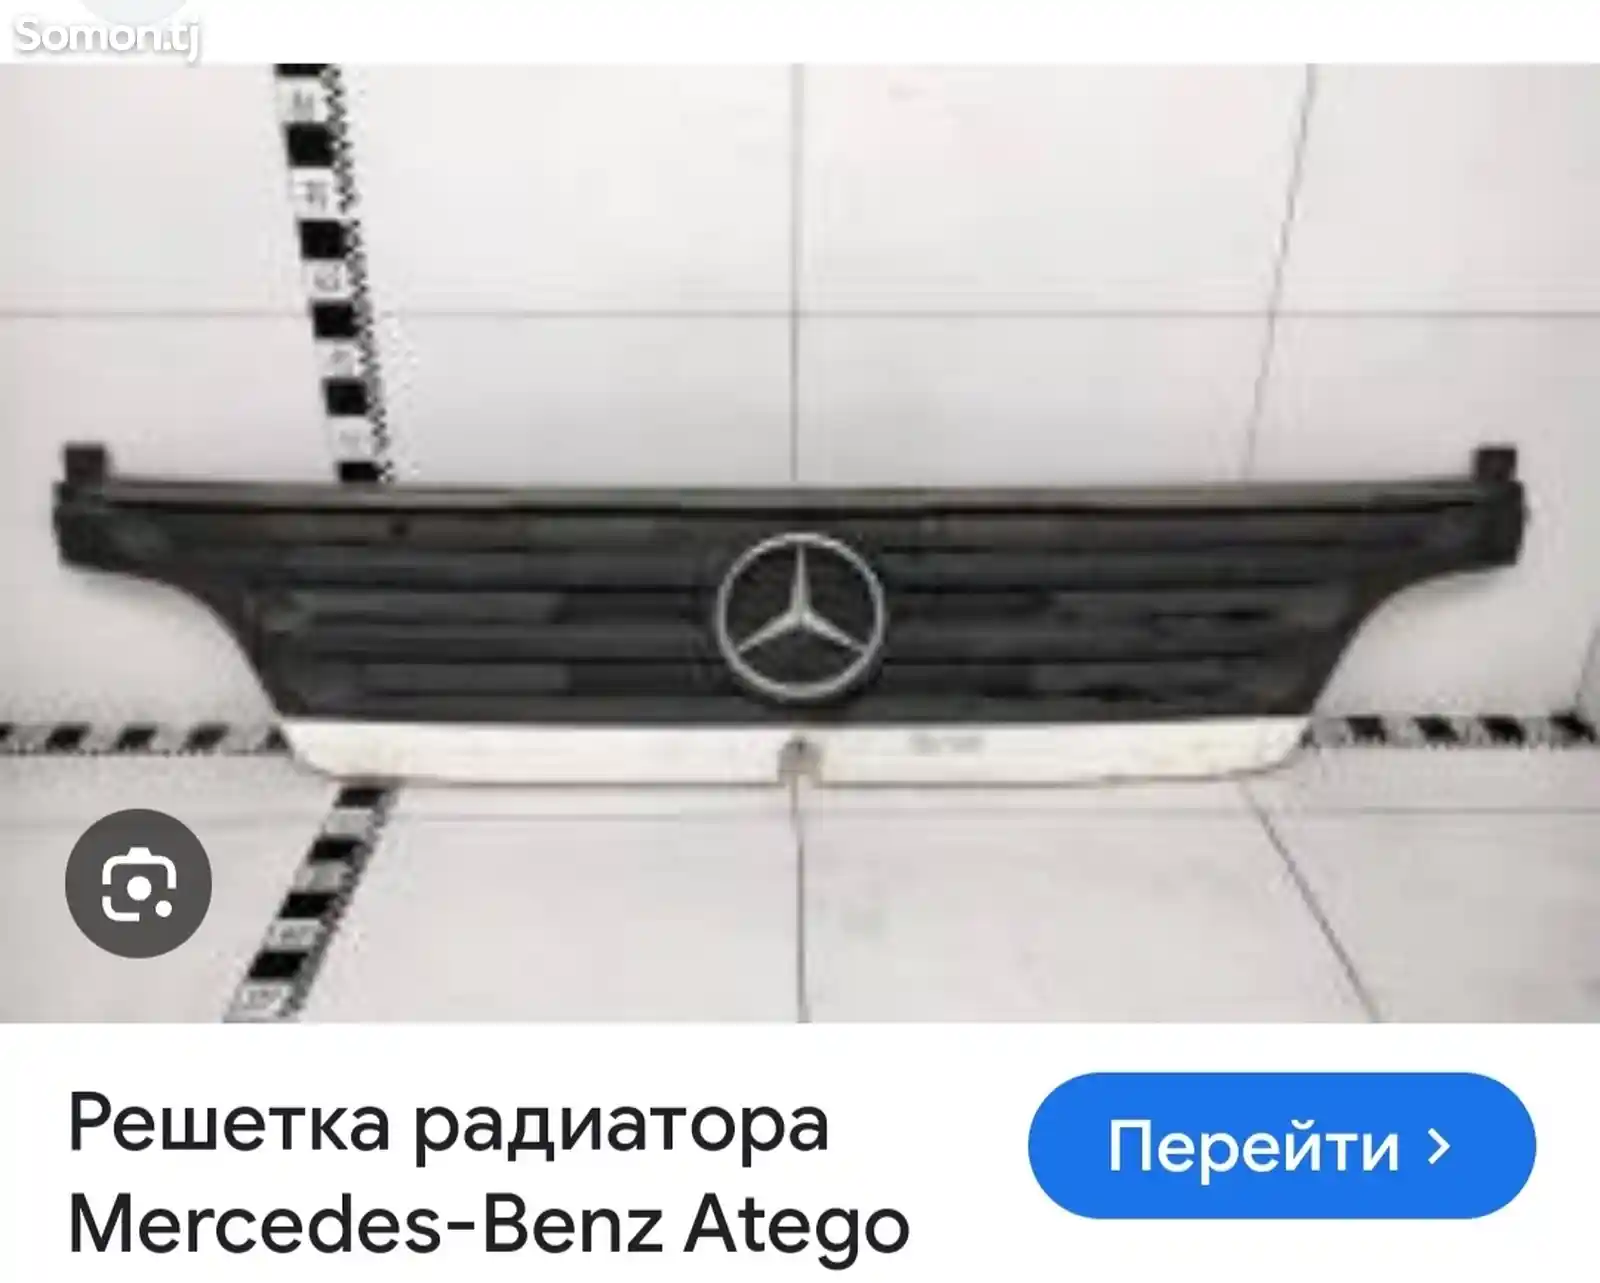 Решетка радиатора на Mercedes-Benz Atego